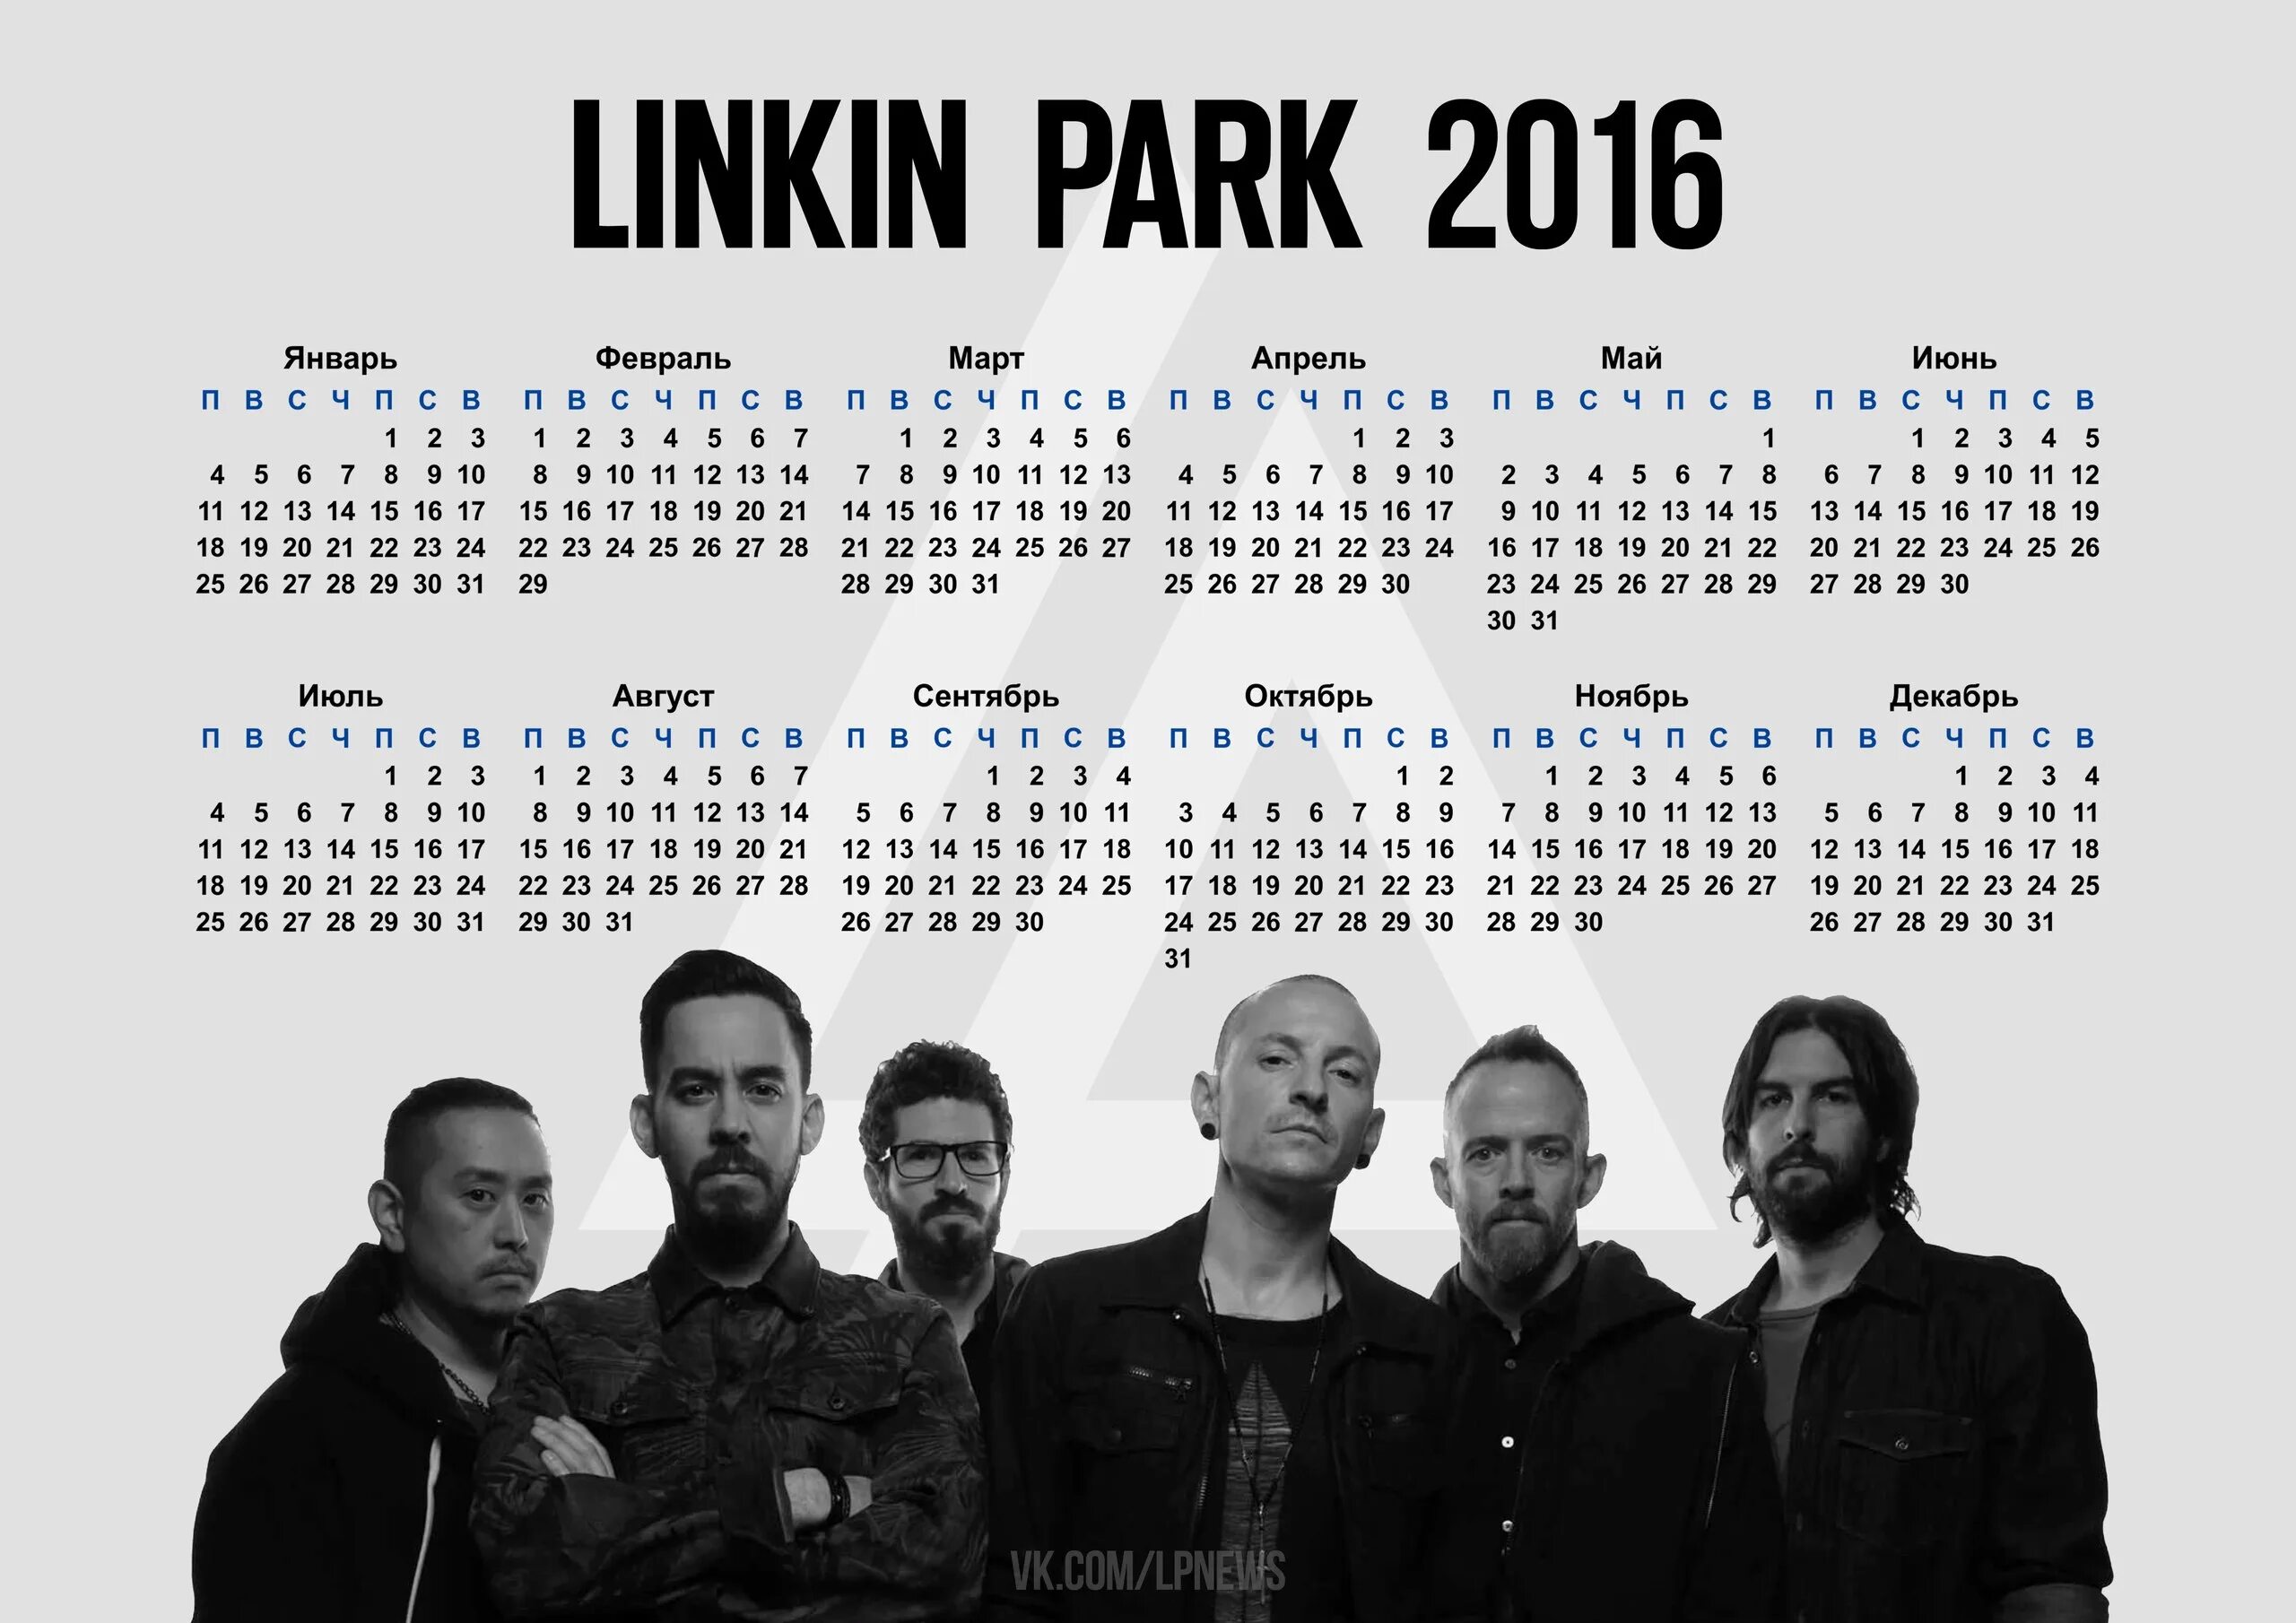 Линкин парк тексты песен. Линкин парк 2016. Linkin Park песни. Линкин парк альбомы. Линкин парк обложка.